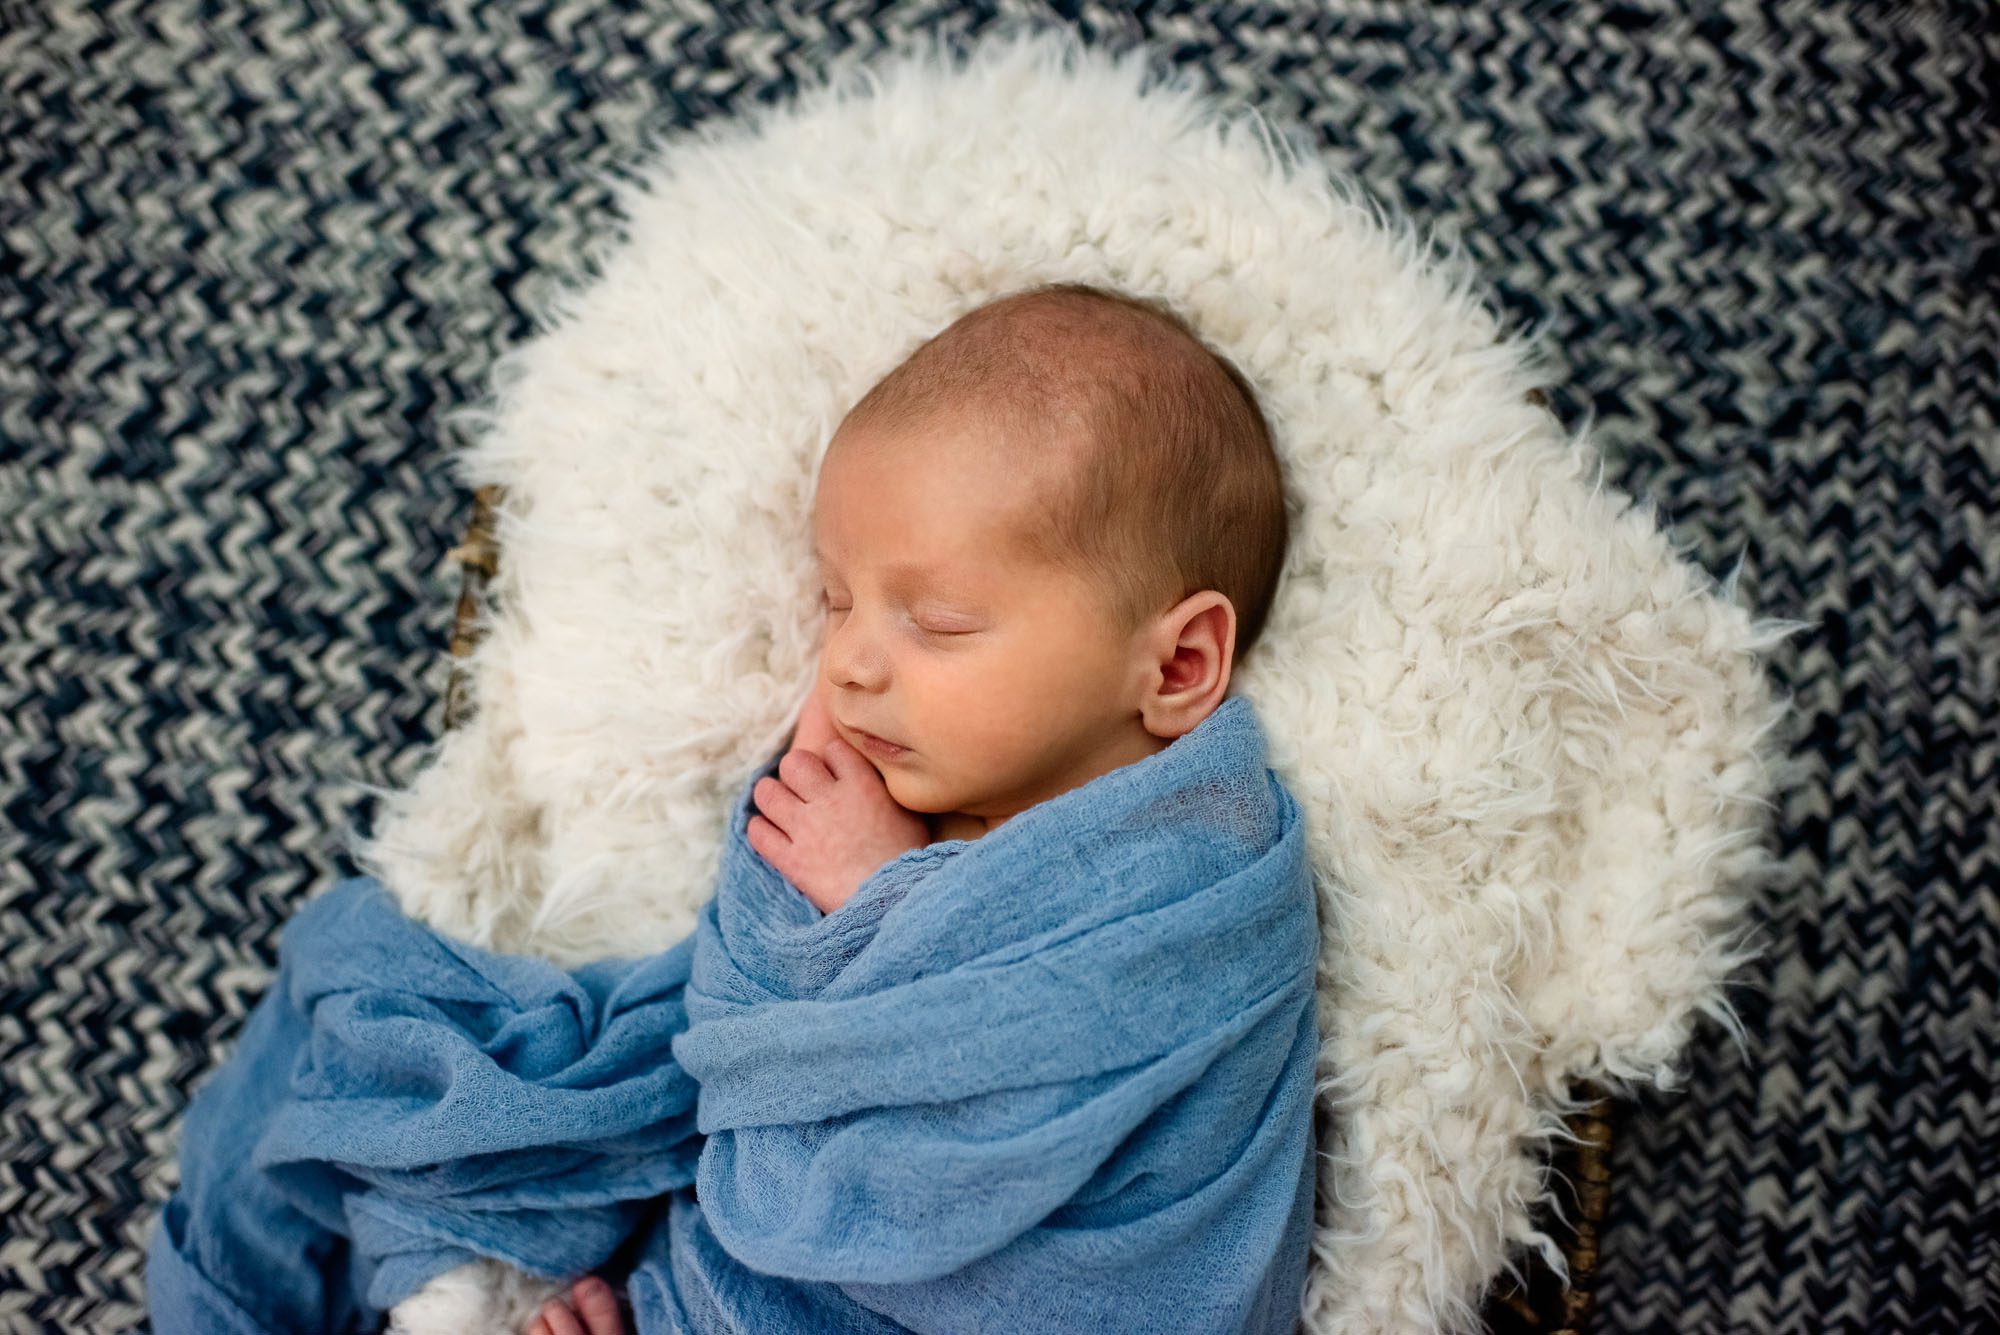 Newborn asleep in basket, San Antonio newborn photographer